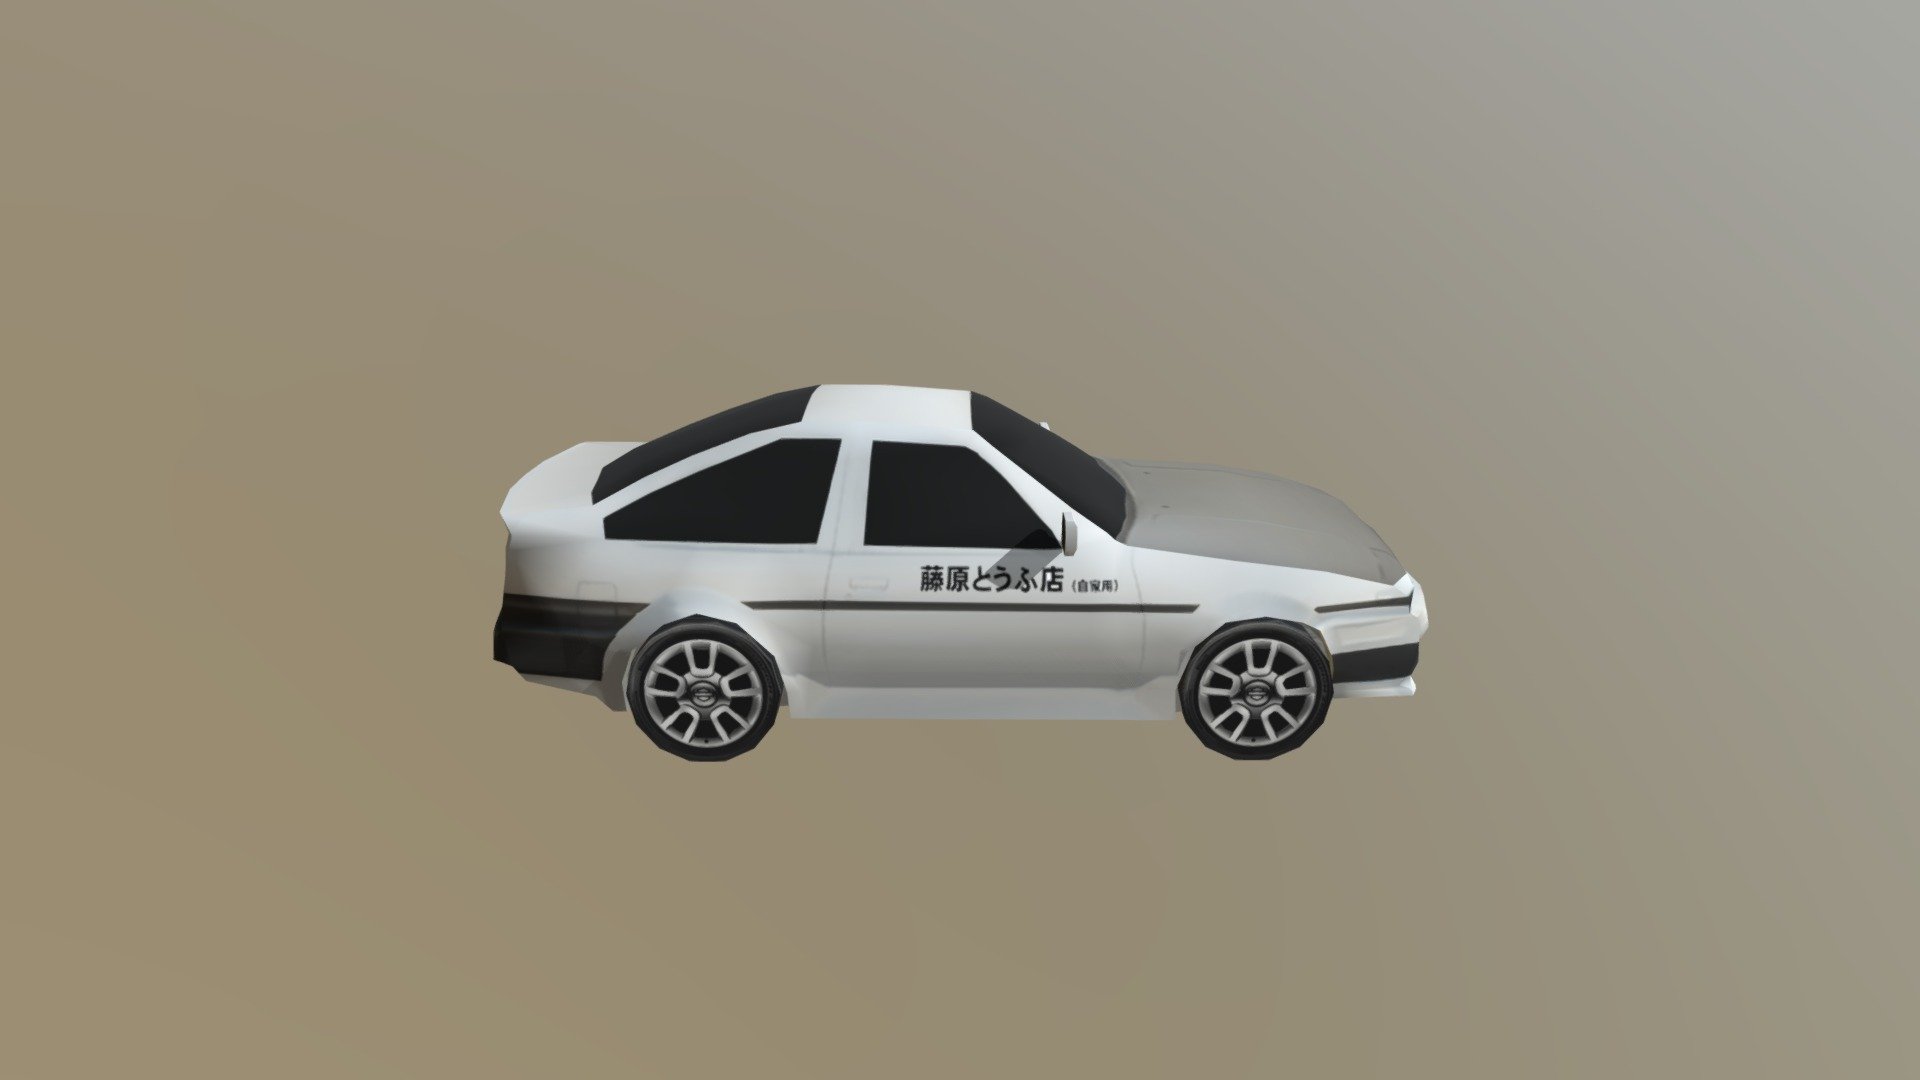 Vh LP Car - Toyota Sprinter Trueno AE86